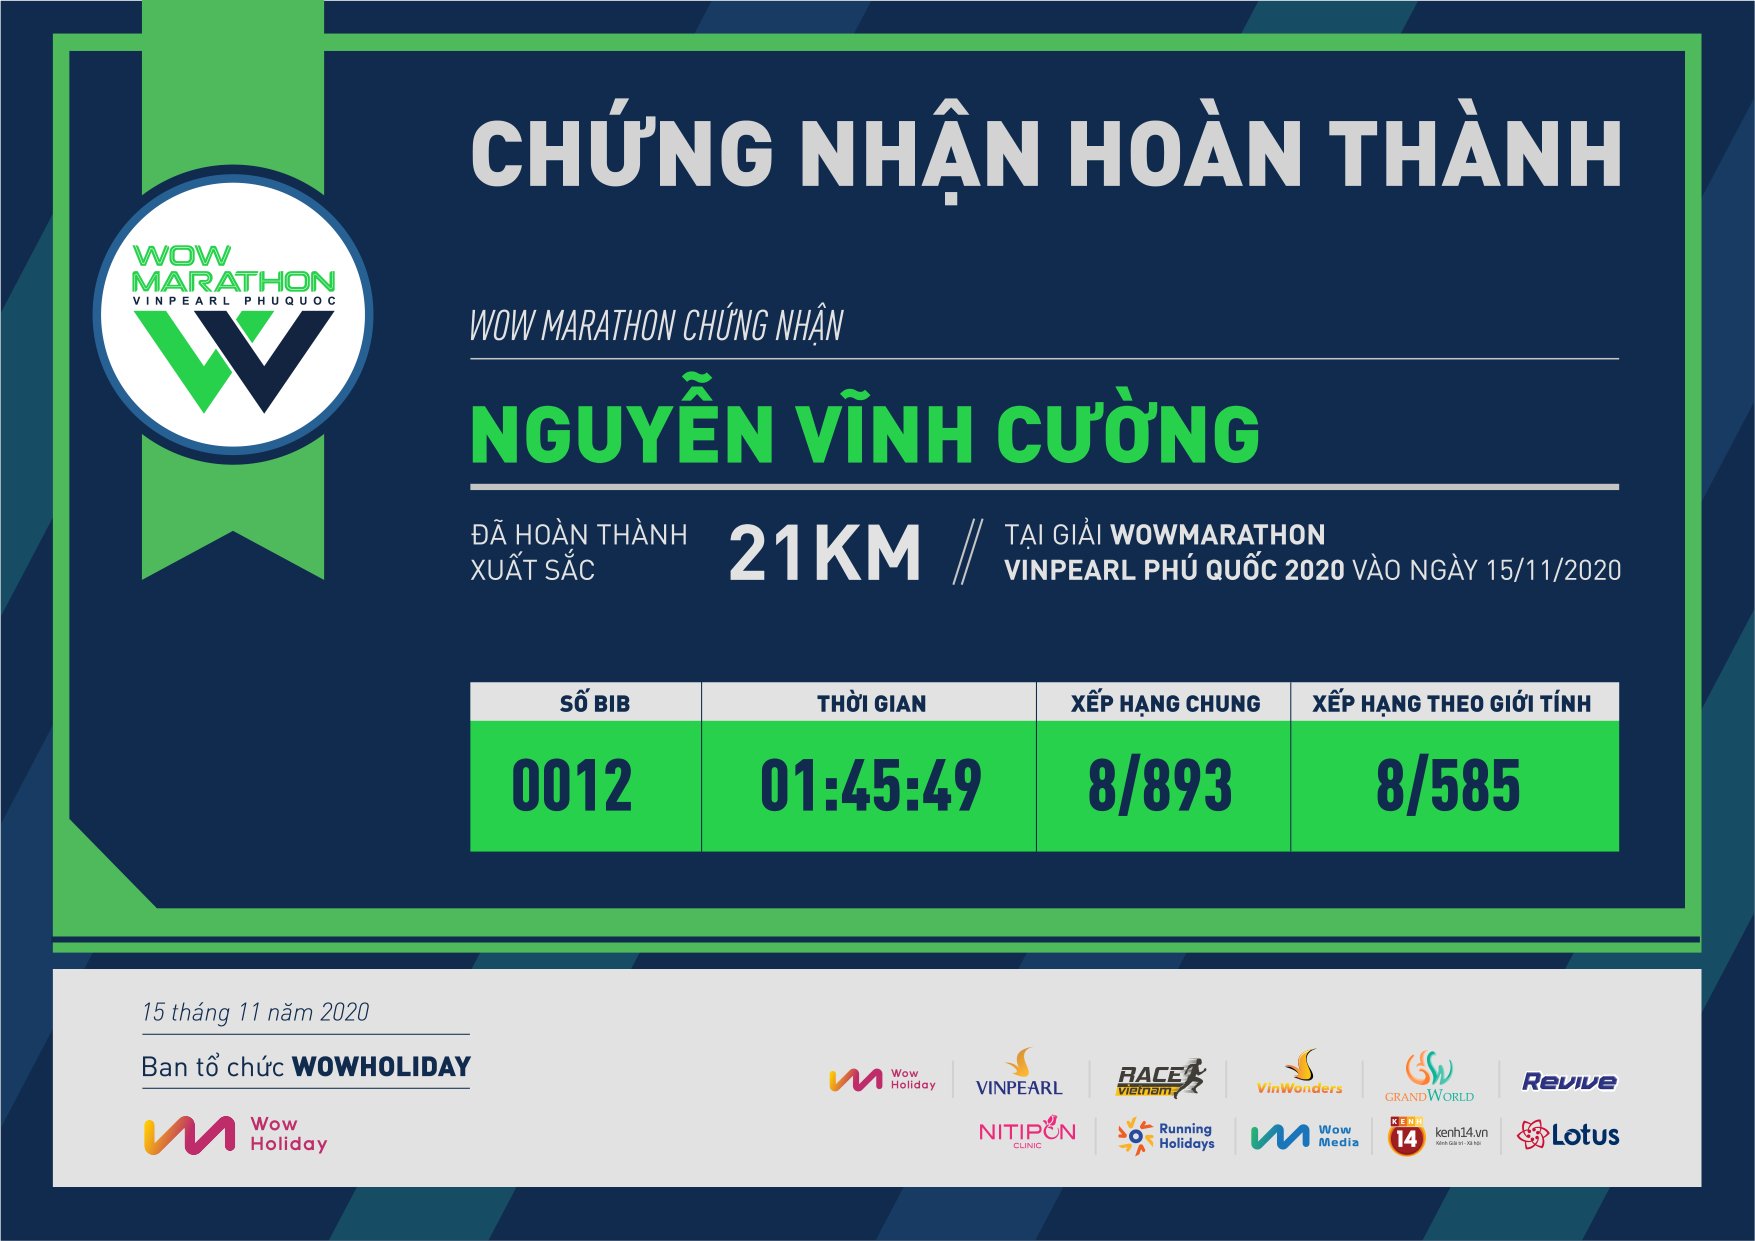 0012 - Nguyễn Vĩnh Cường